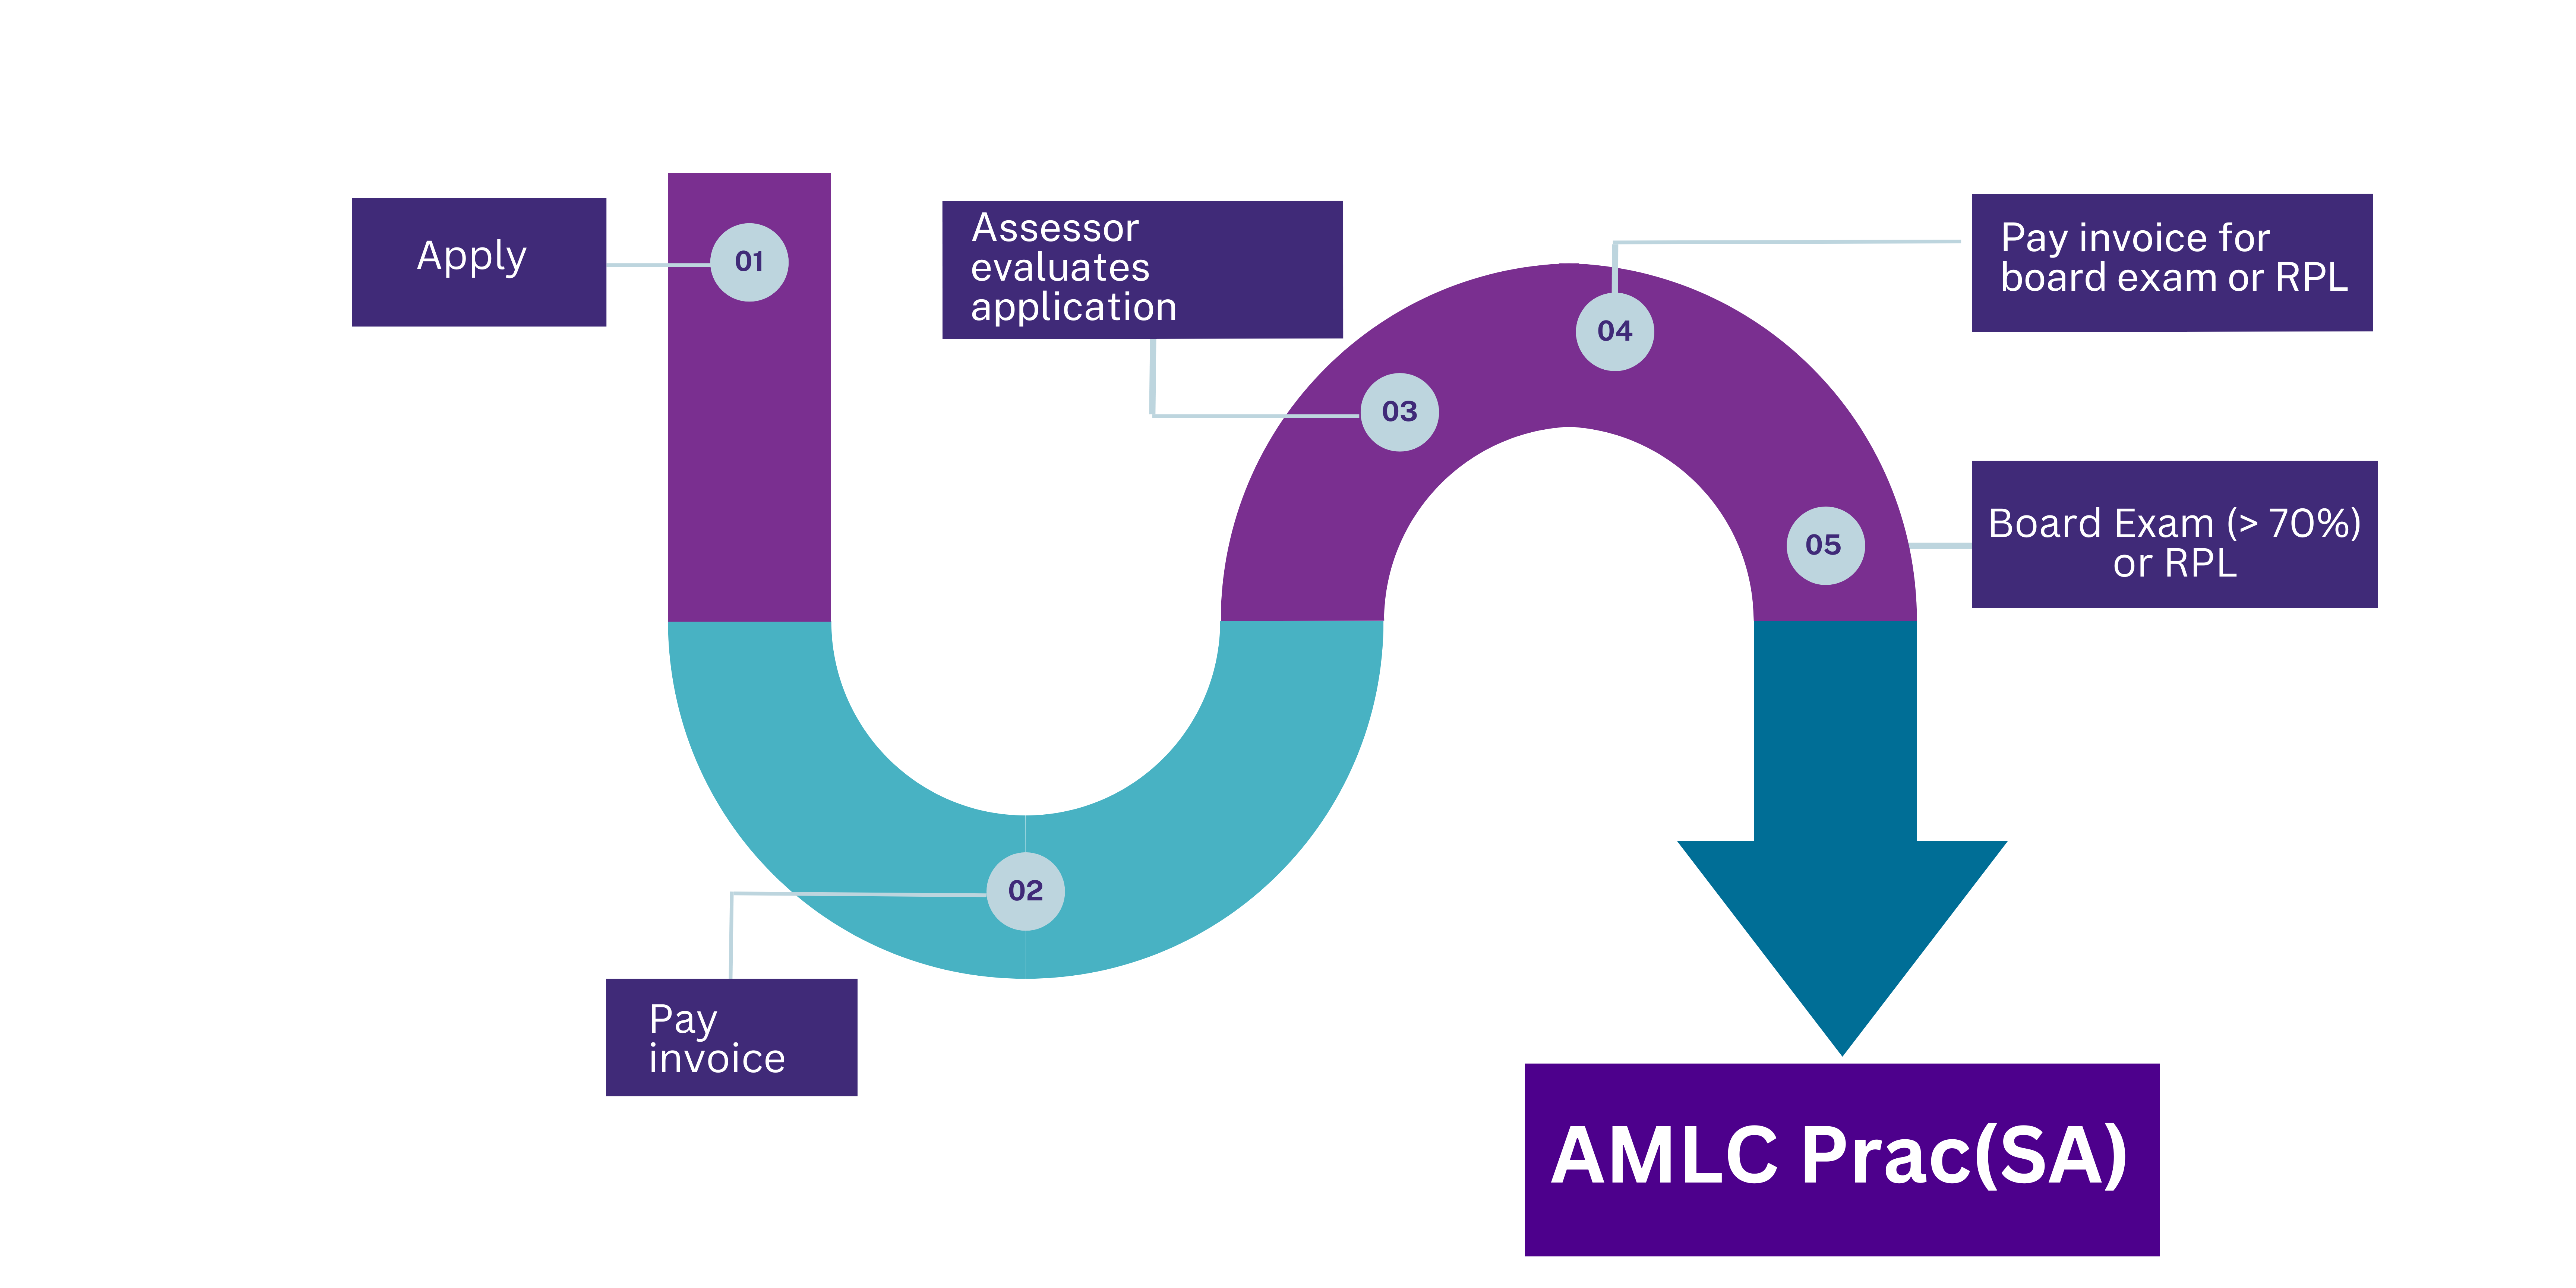 AMLC Prac (SA) path